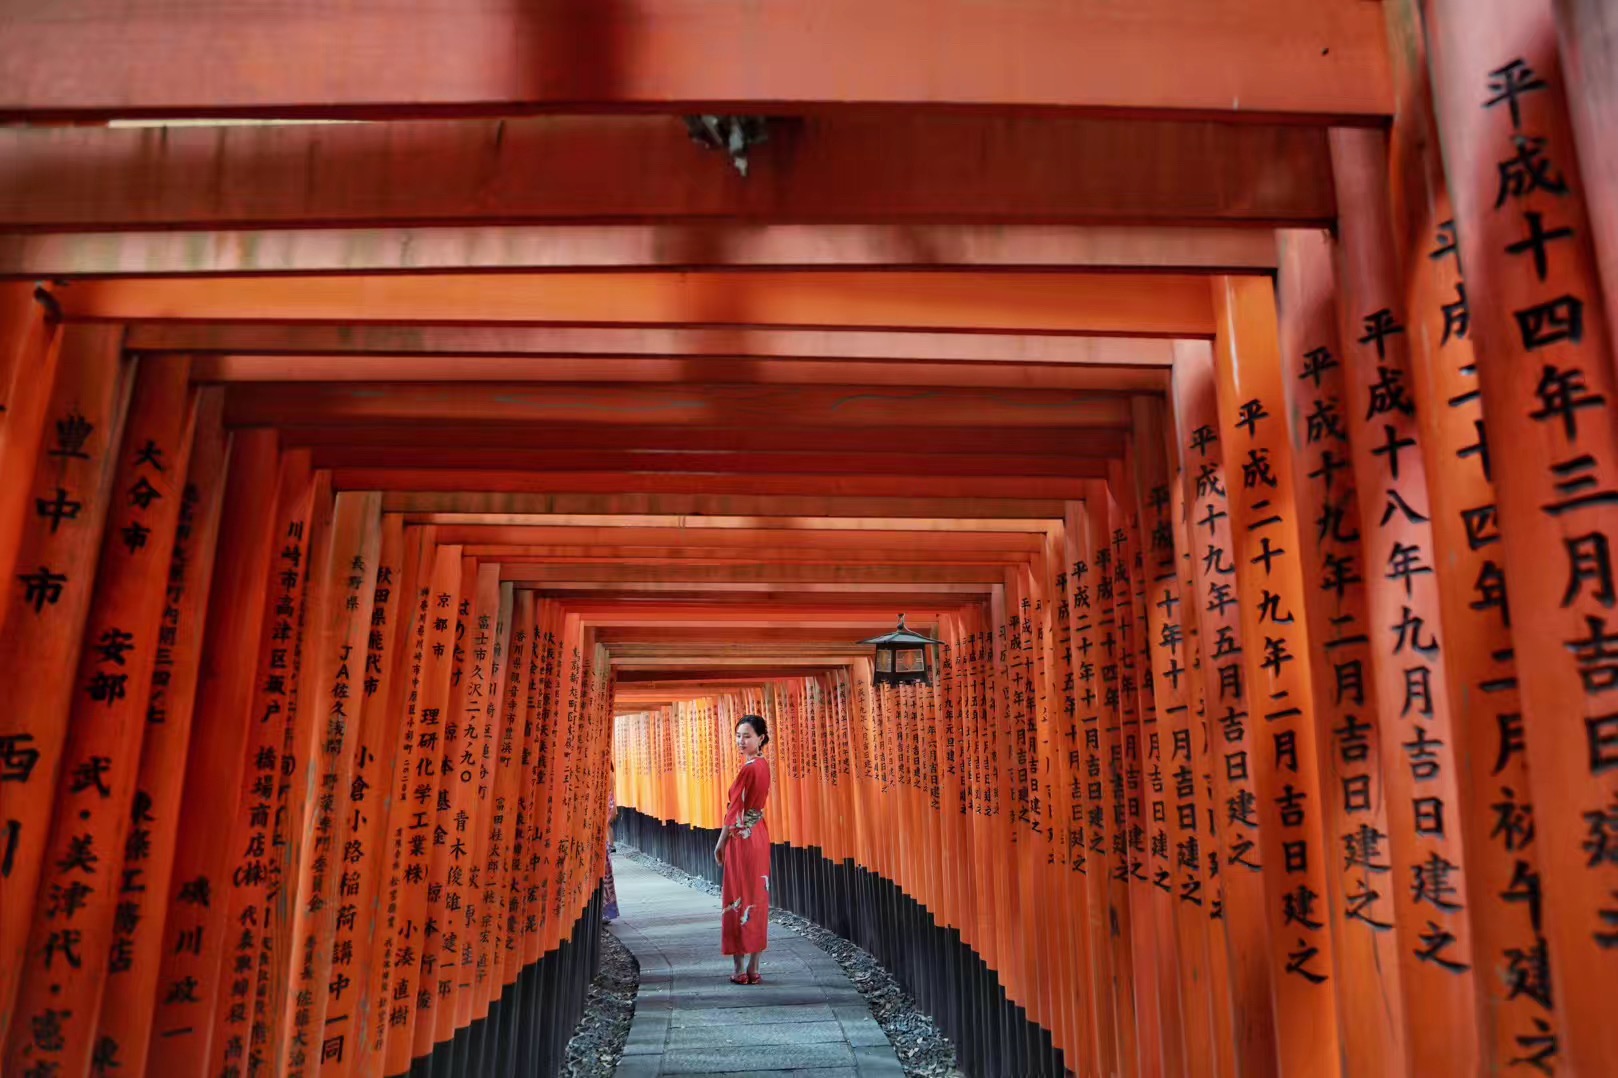 京都伏见稻荷 千本鸟居的绝美风景-京都旅游攻略-游记-去哪儿攻略